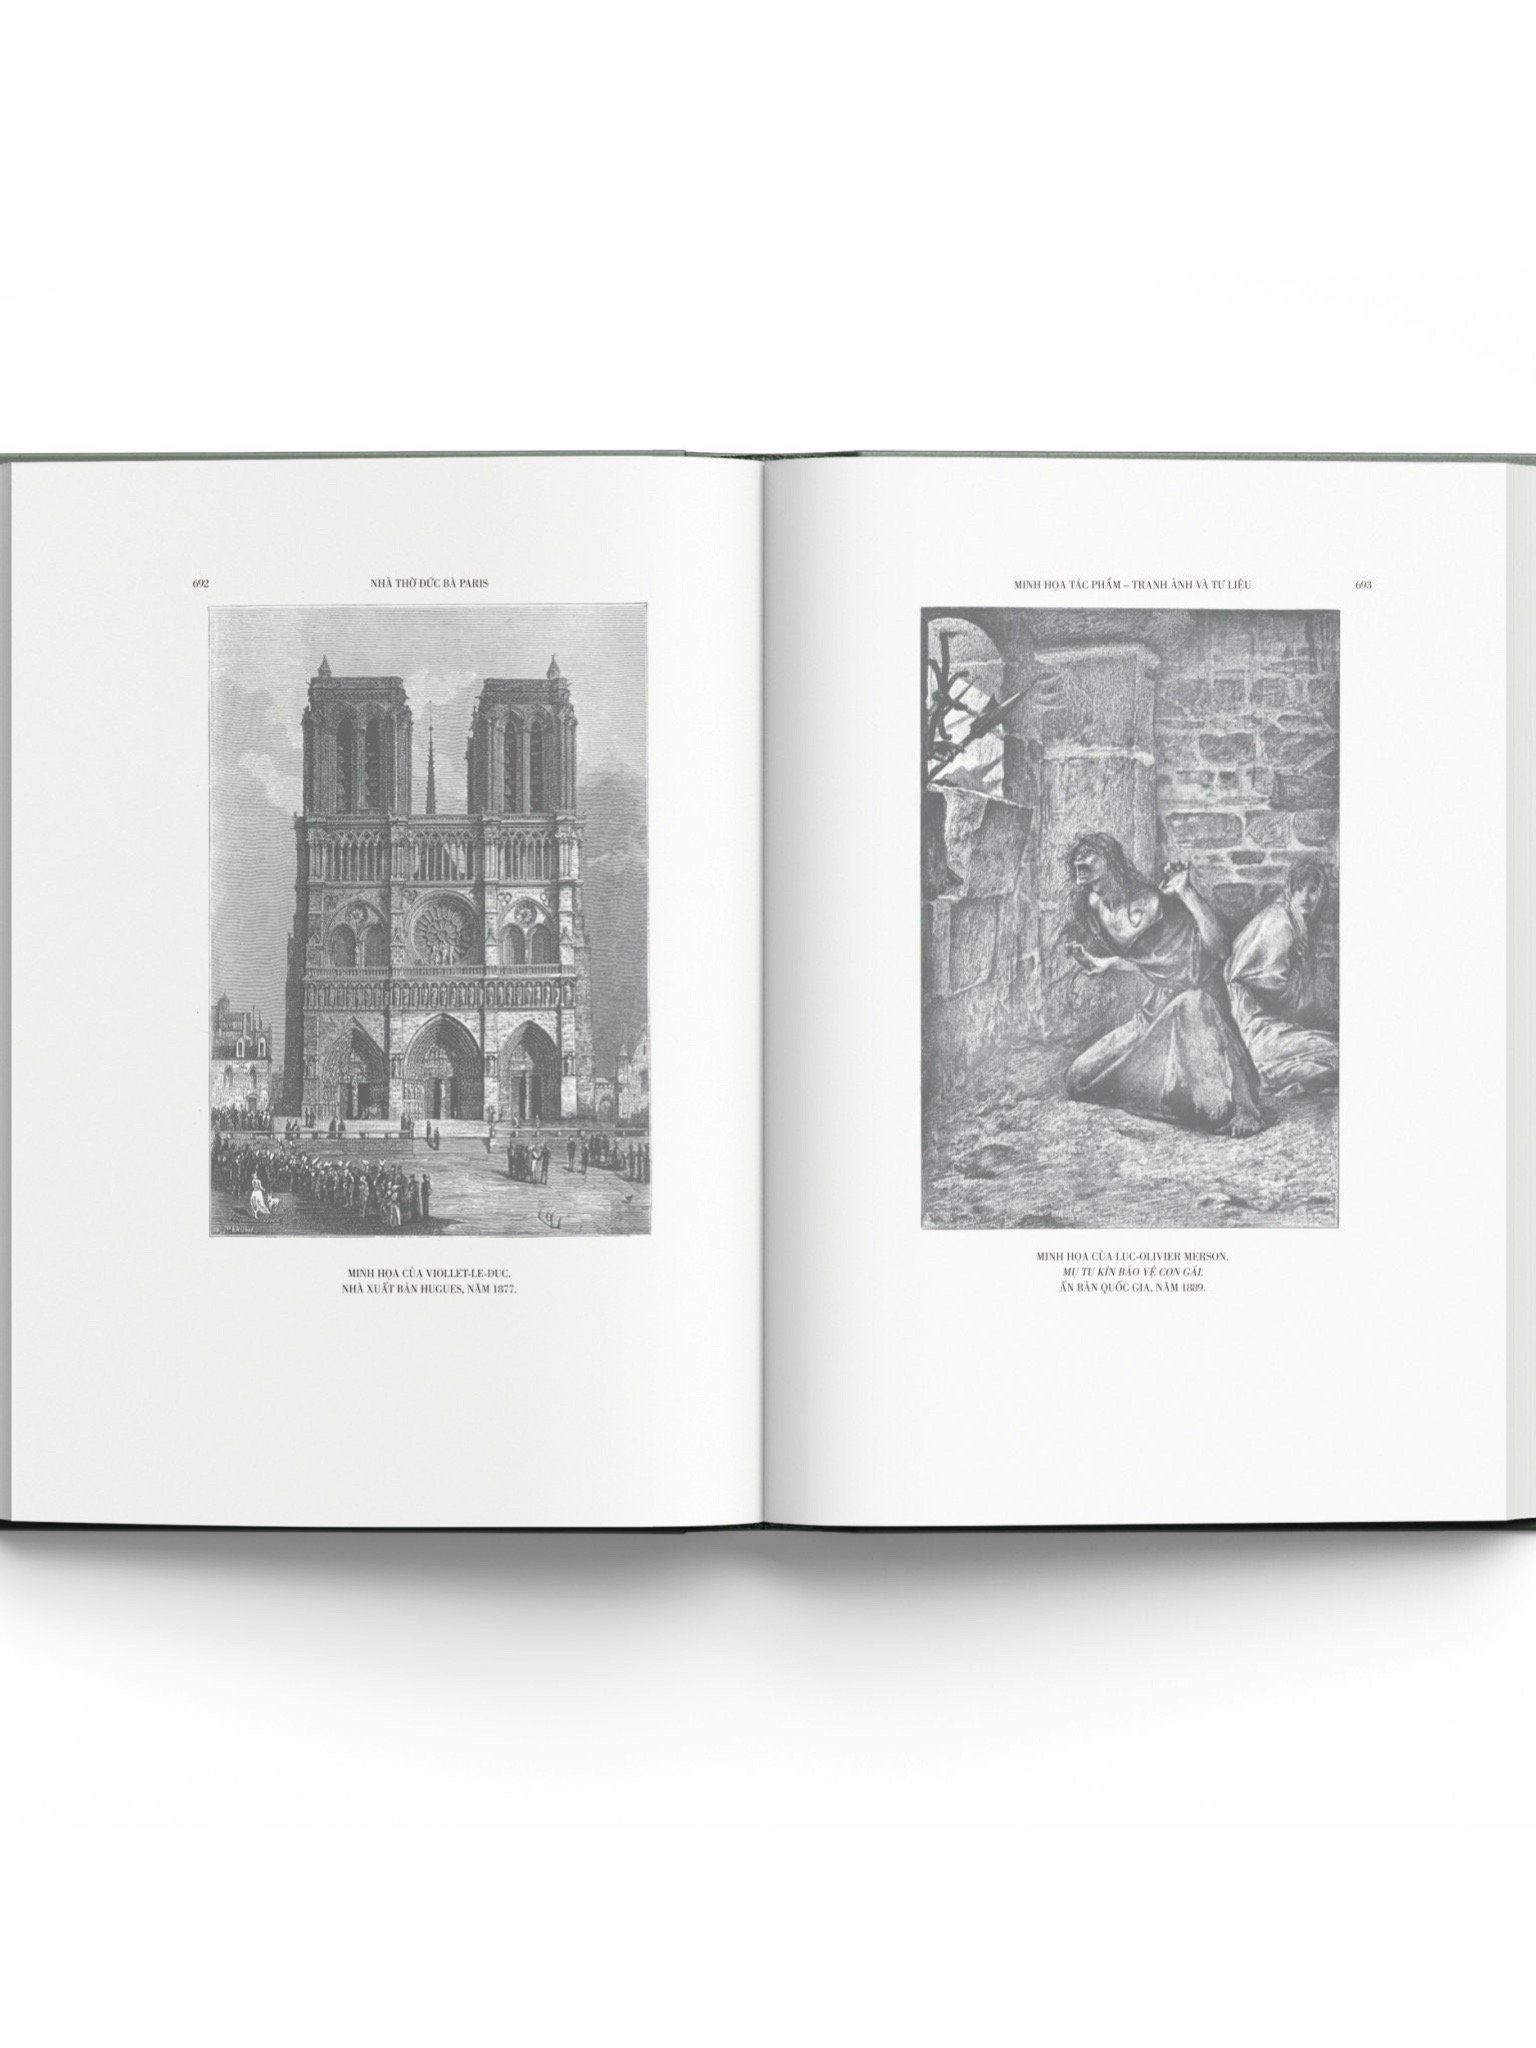 [Bản dịch mới và đầy đủ, kèm 200 minh họa tuyệt đẹp] NHÀ THỜ ĐỨC BÀ PARIS – Victor Hugo – Đông A – Bìa cứng có áo